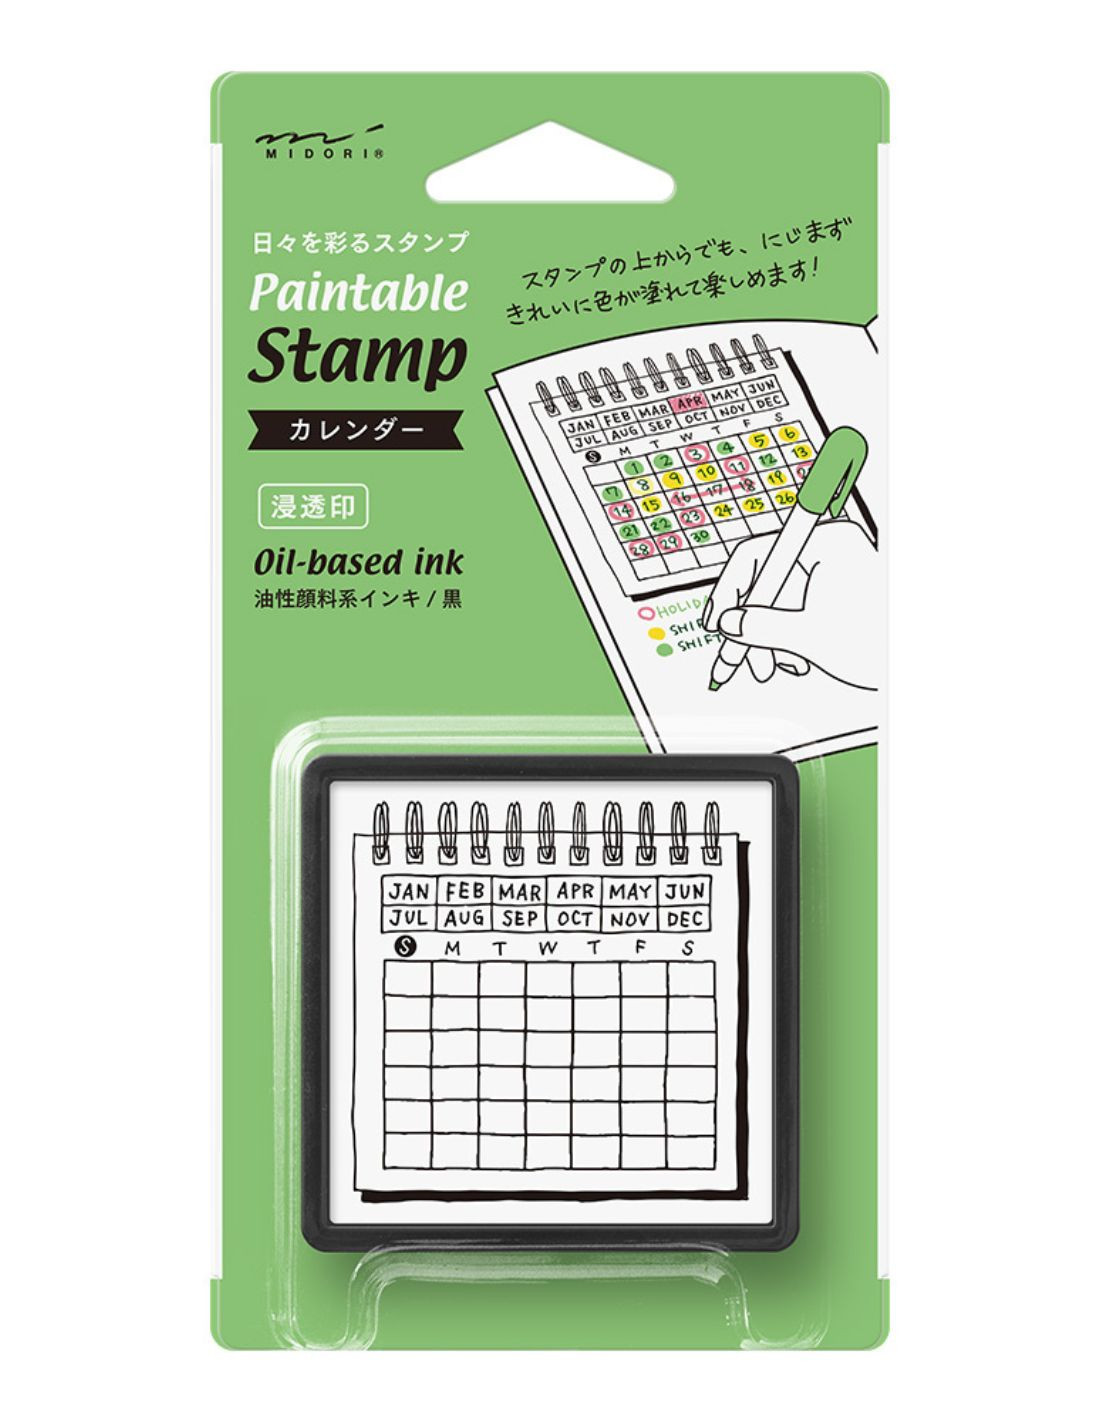 Tampon pré-encré Paintable Stamp - Calendrier - Midori